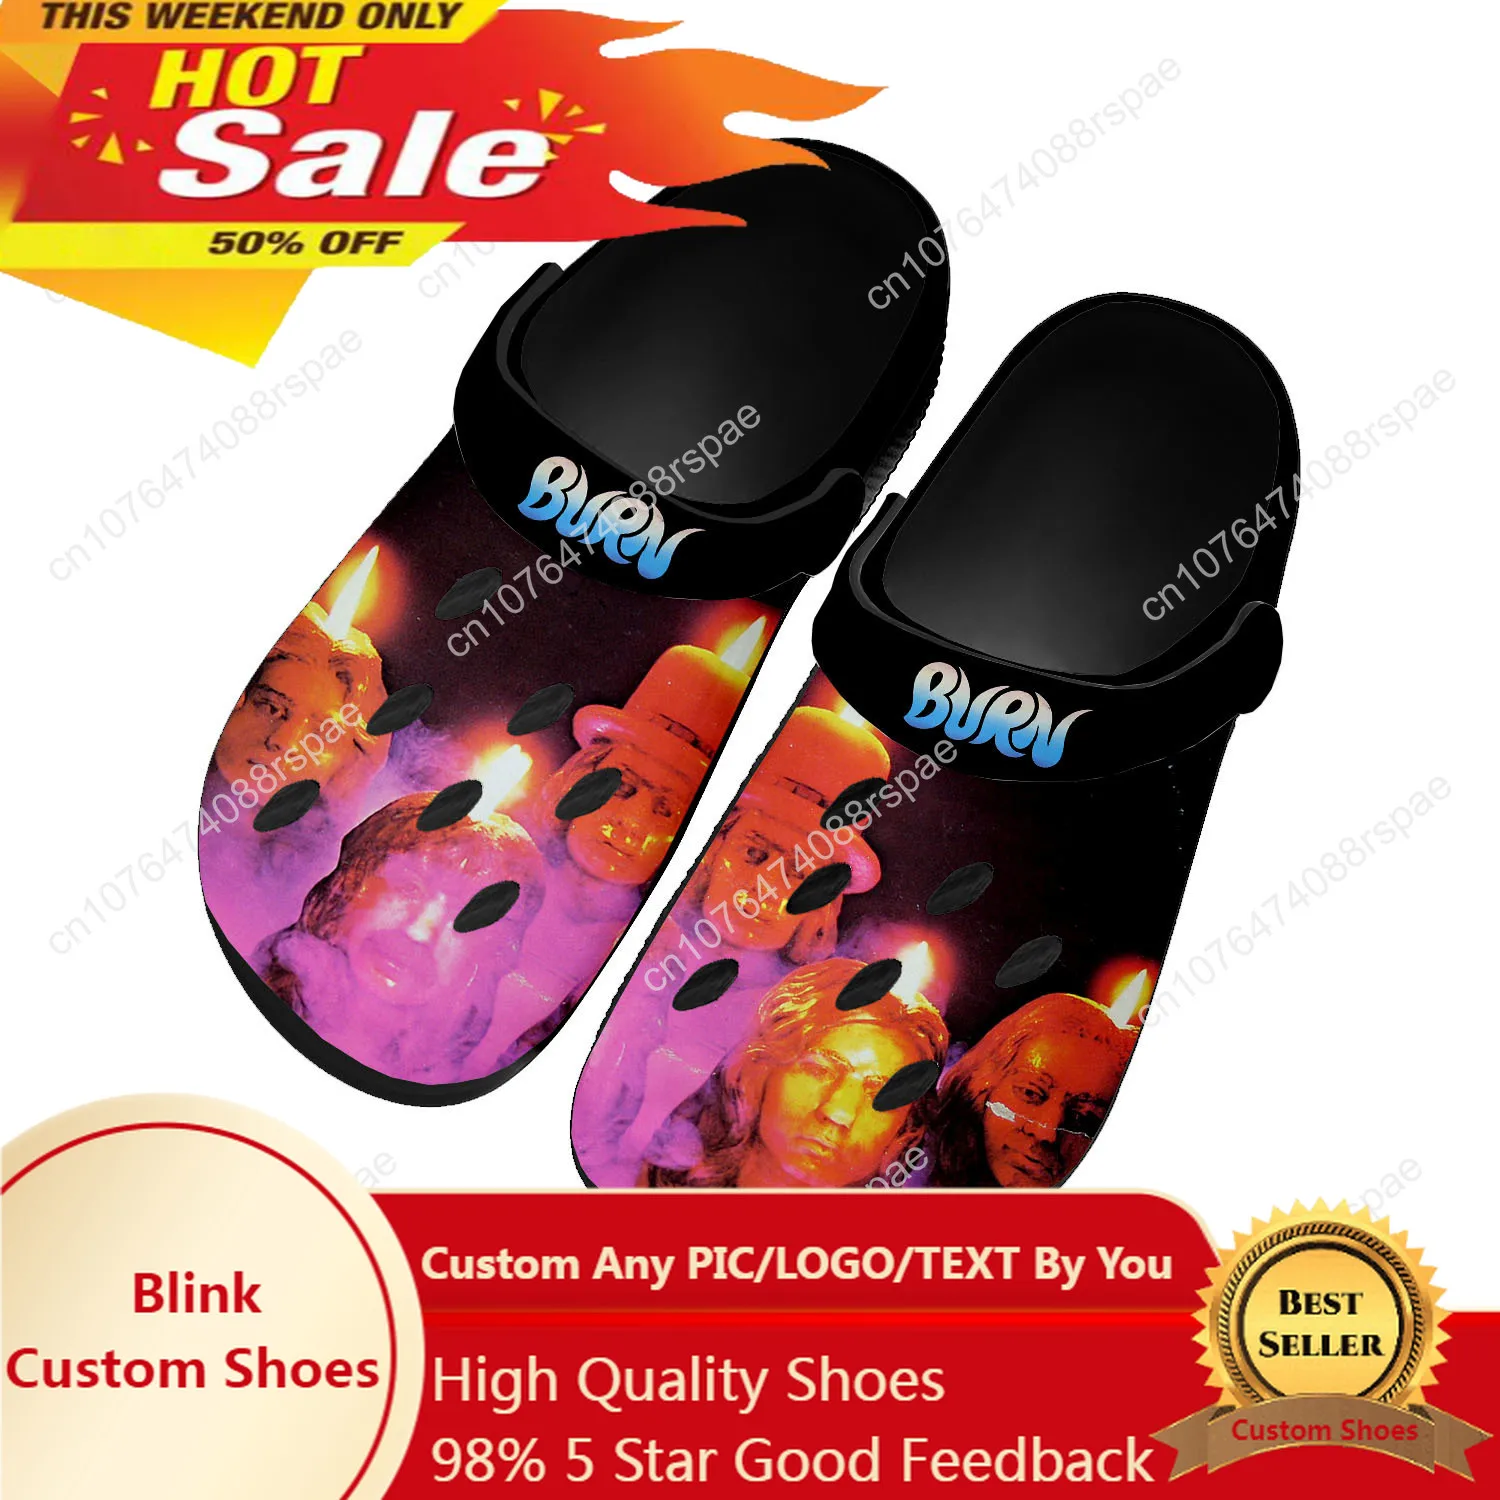 

Темно-фиолетовая обувь для дома в стиле рок-группы из тяжелого металла, обувь для воды на заказ, мужские и женские подростковые дышащие шлепанцы с отверстиями для пляжа